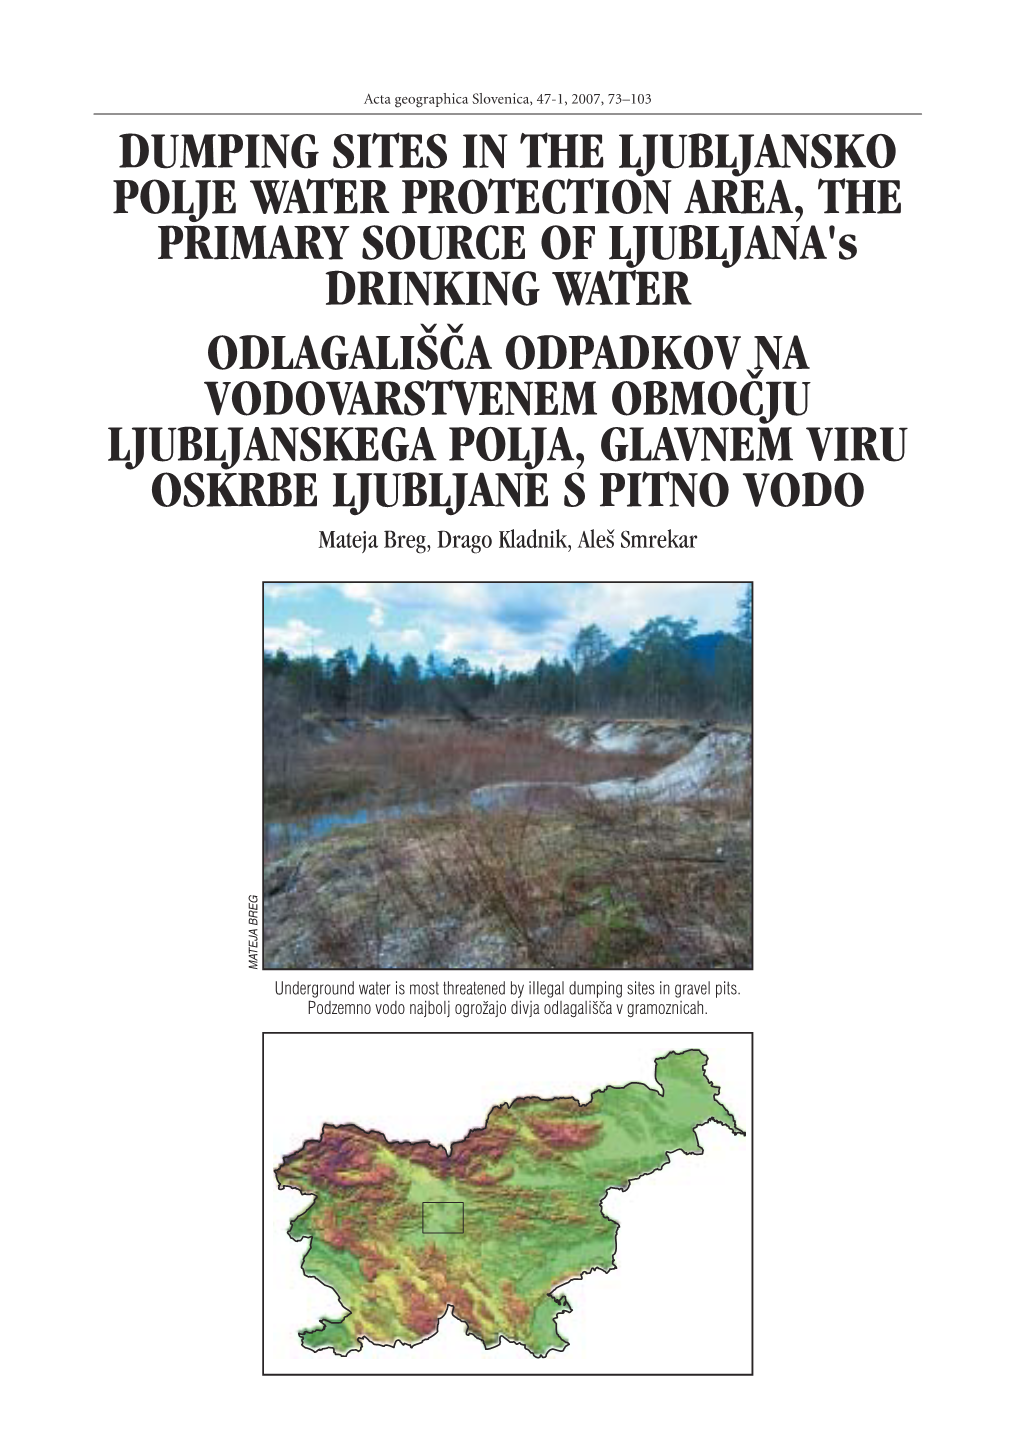 Dumping Sites in the Ljubljansko Polje Water